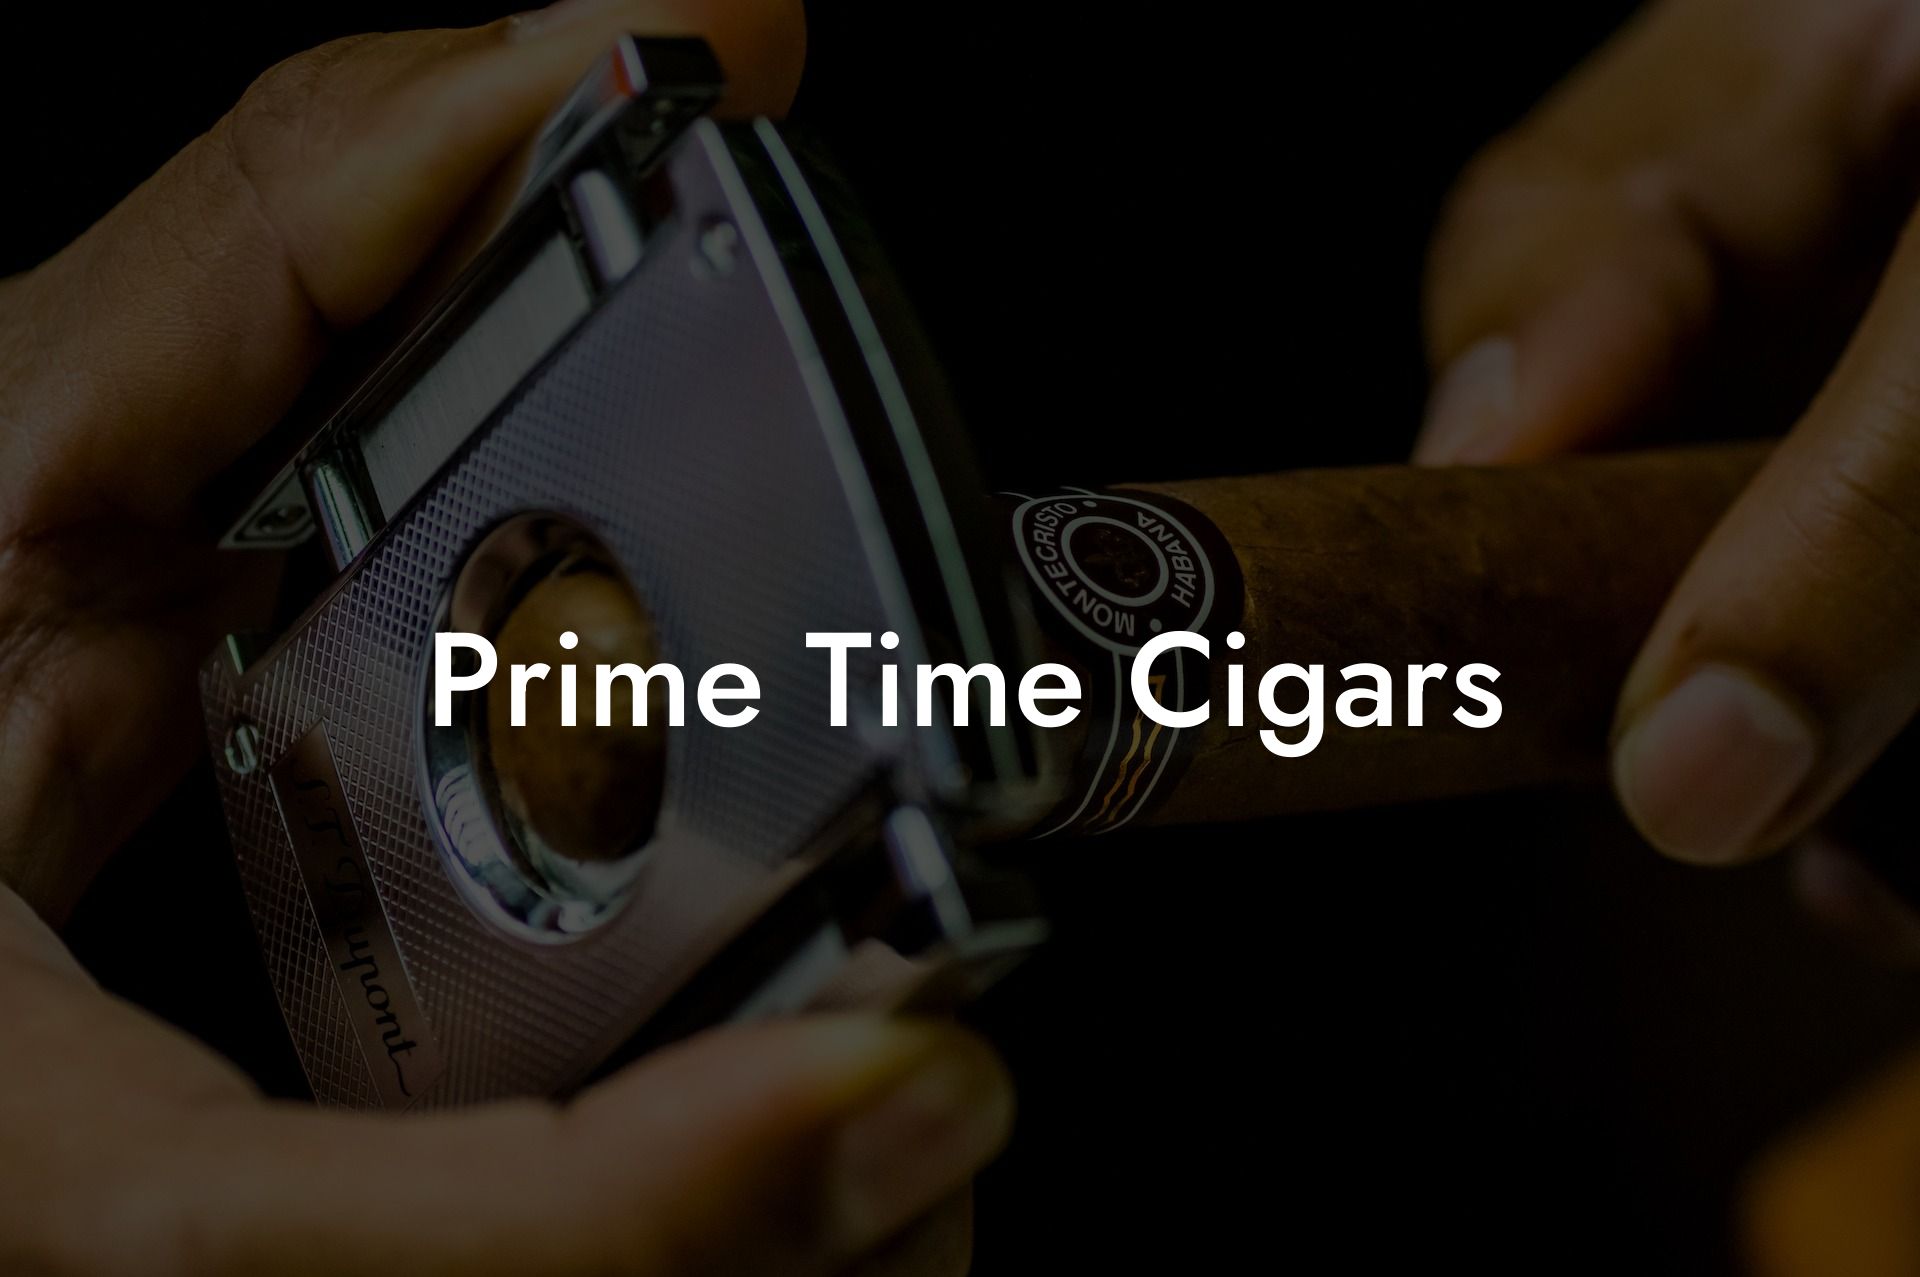 Prime Time Cigars